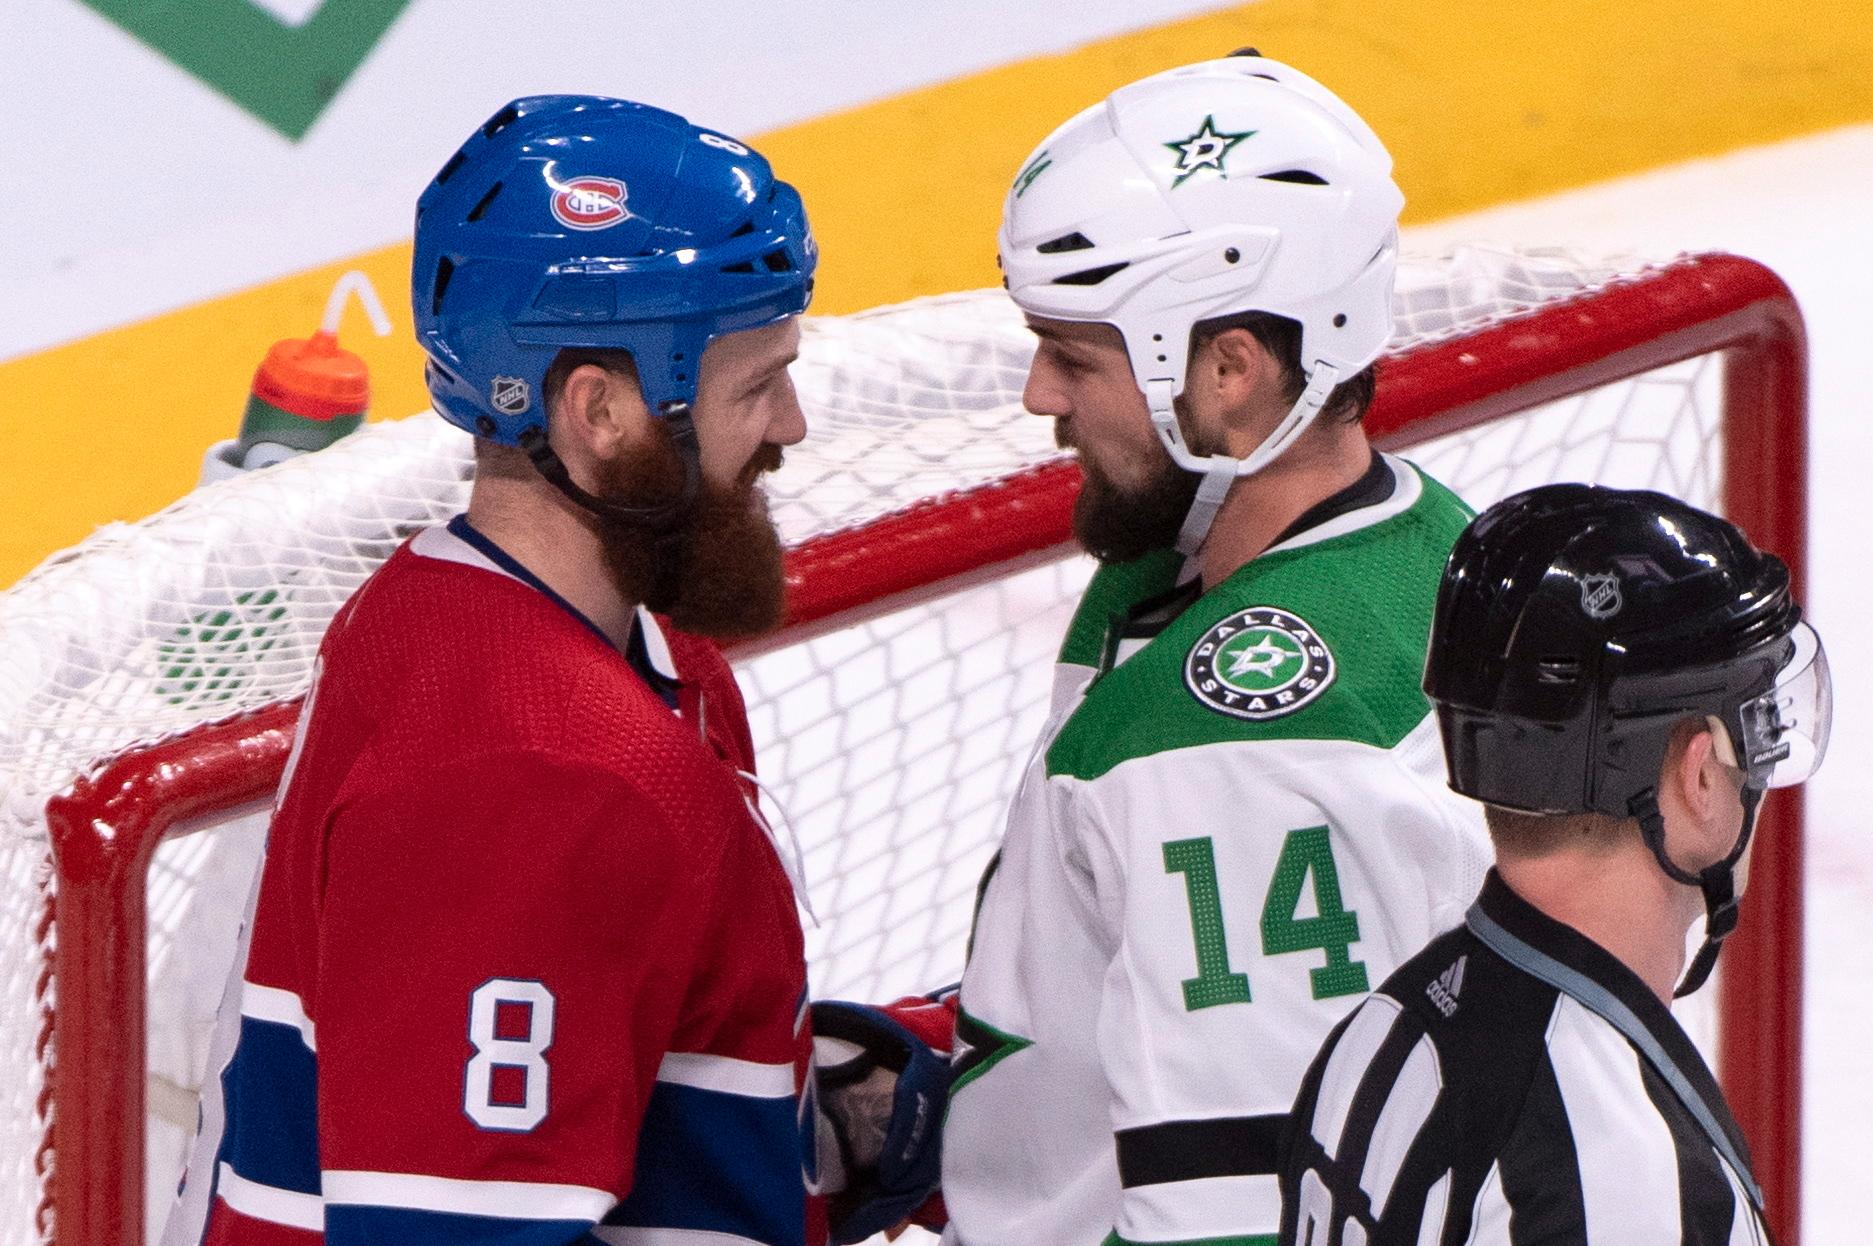 Bröderna Jordie och Jamie Benn under en NHL-match mellan Montreal och Dallas. Båda utan visir och halsskydd.